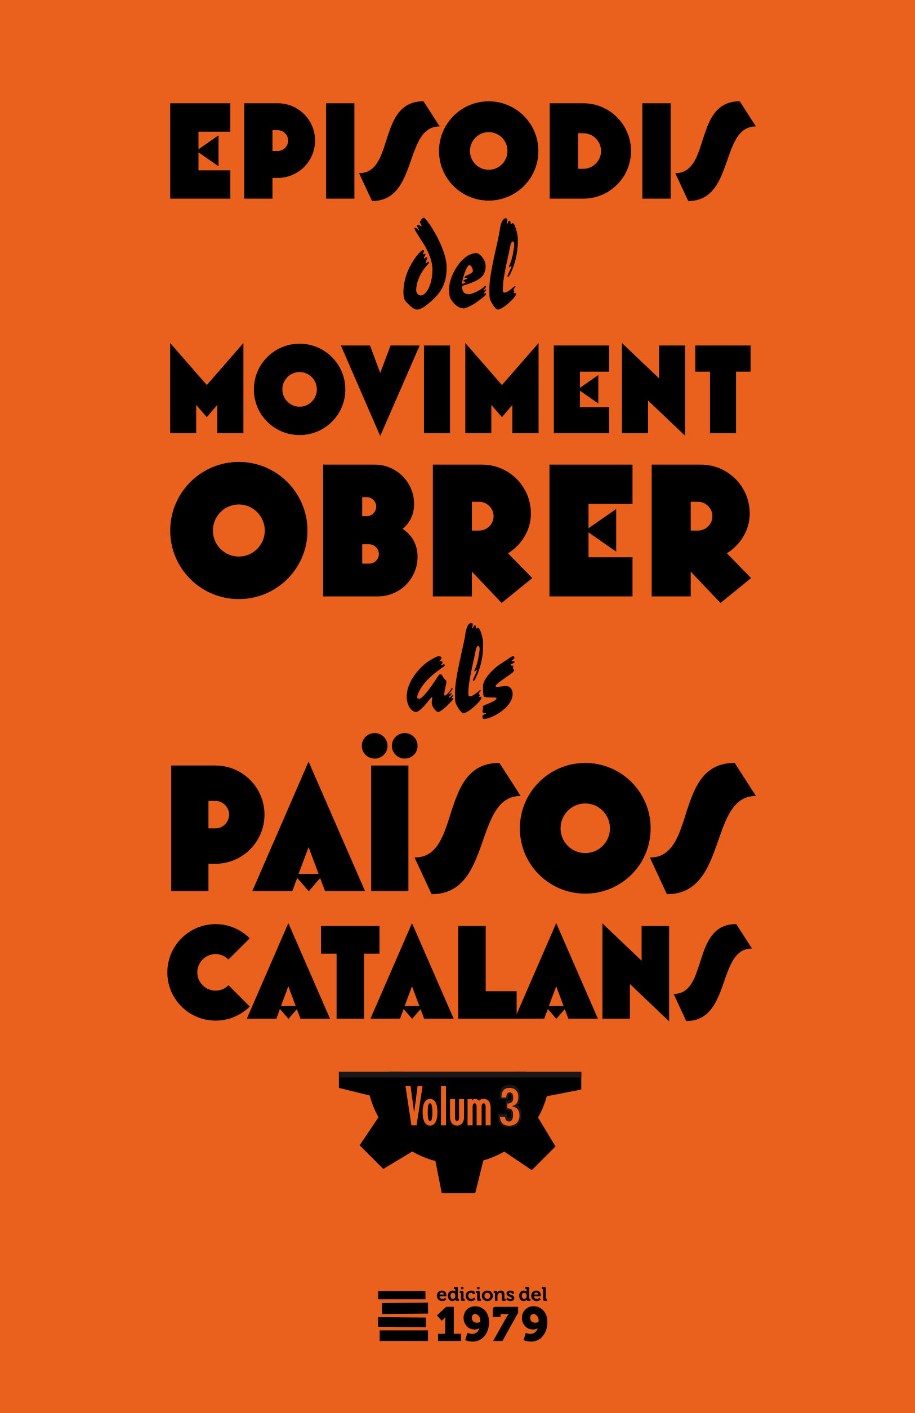 episodis-del-moviment-obrer-als-paisos-catalans-3-9788412818109